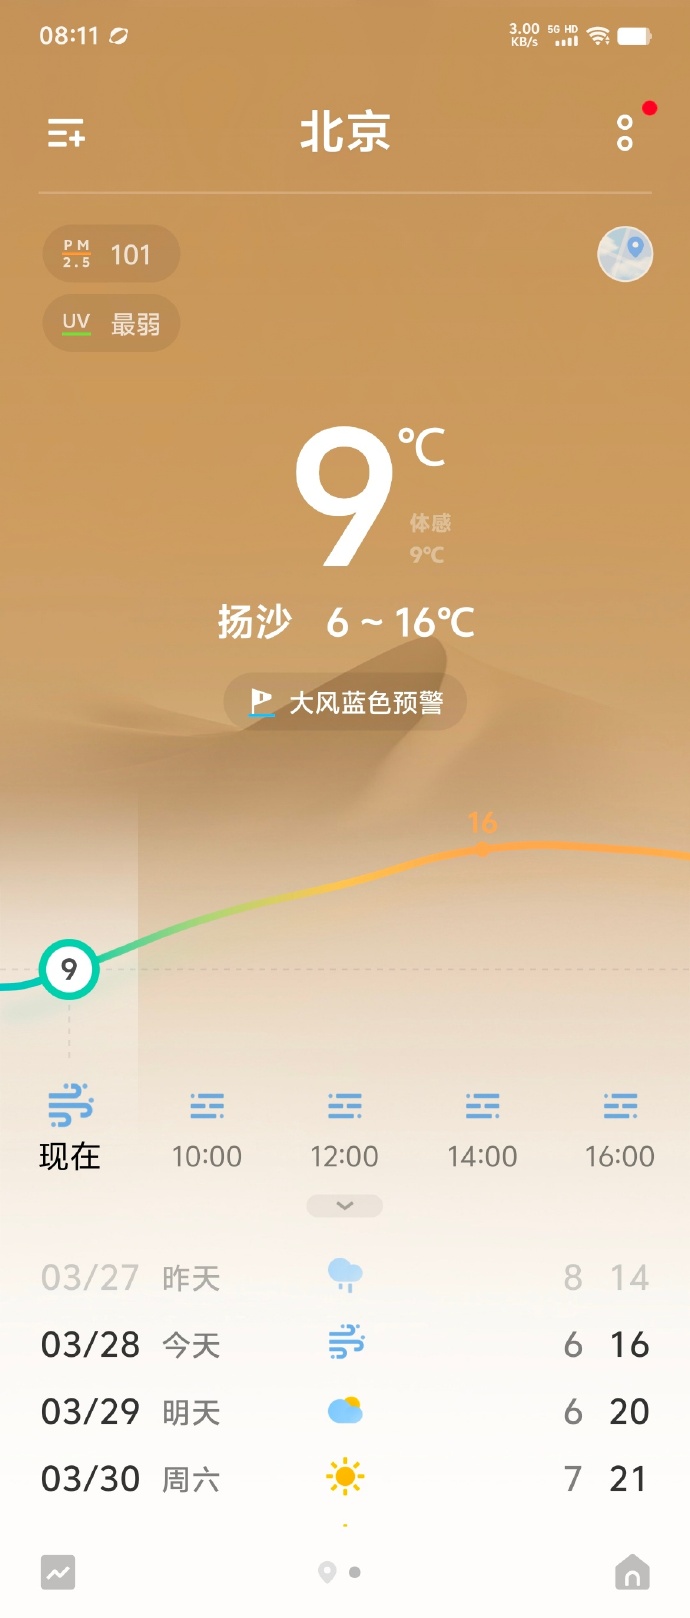 北京今日天氣屬嚴重污染。